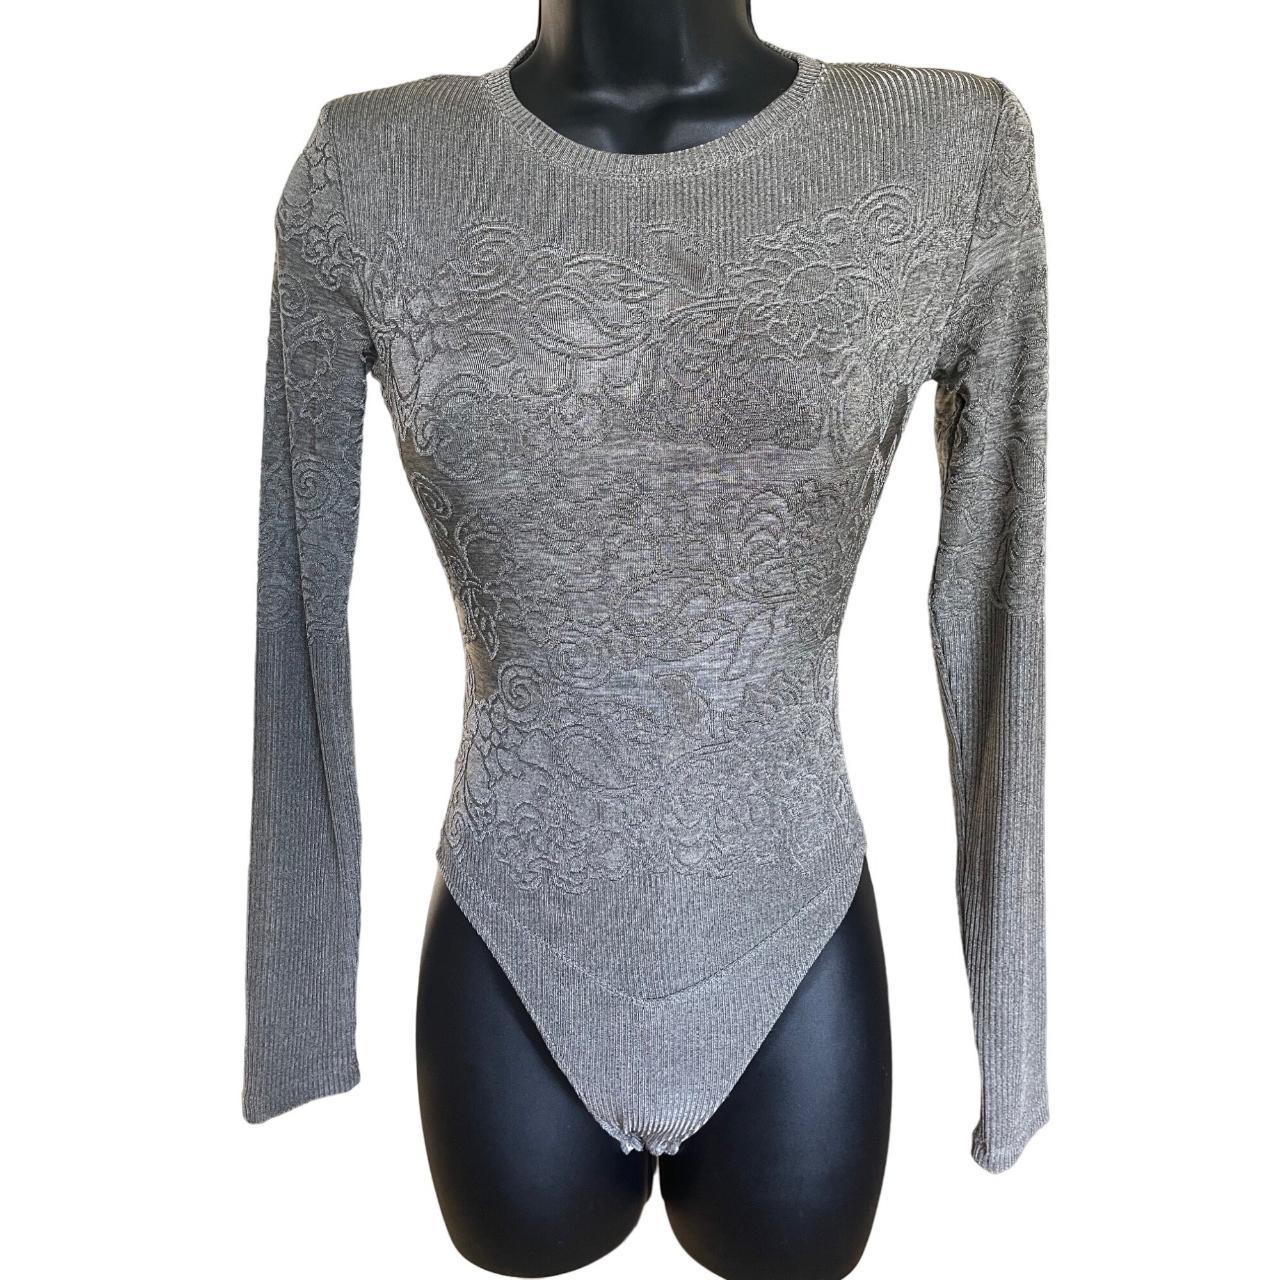 Silver Bodysuits, Grey Bodysuits